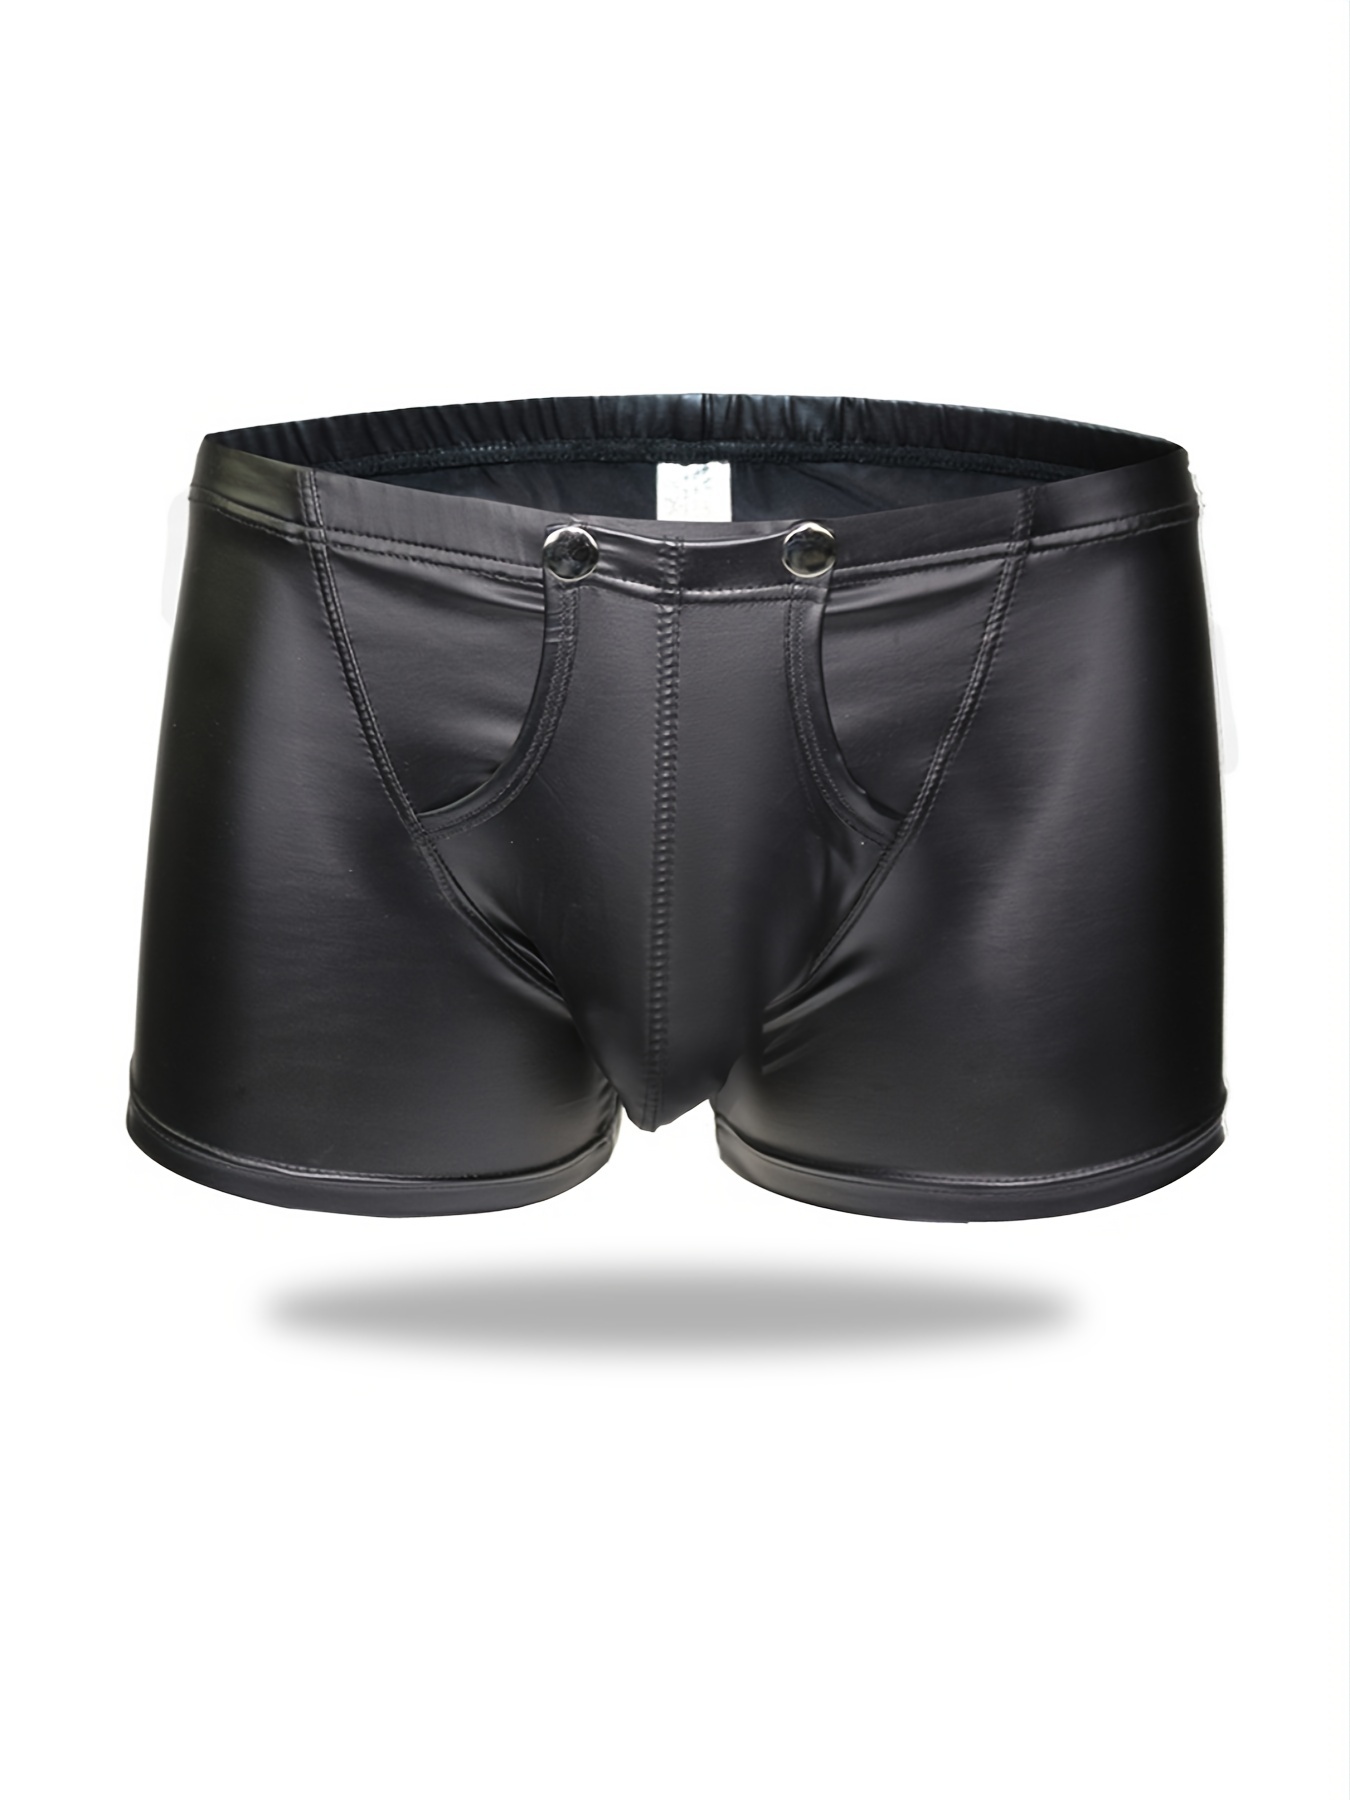 Men’s Boxer Briefs Underwear for Men Sexy Low Waisted Opening Imitation  Leather Underwear Comfortable Underwear